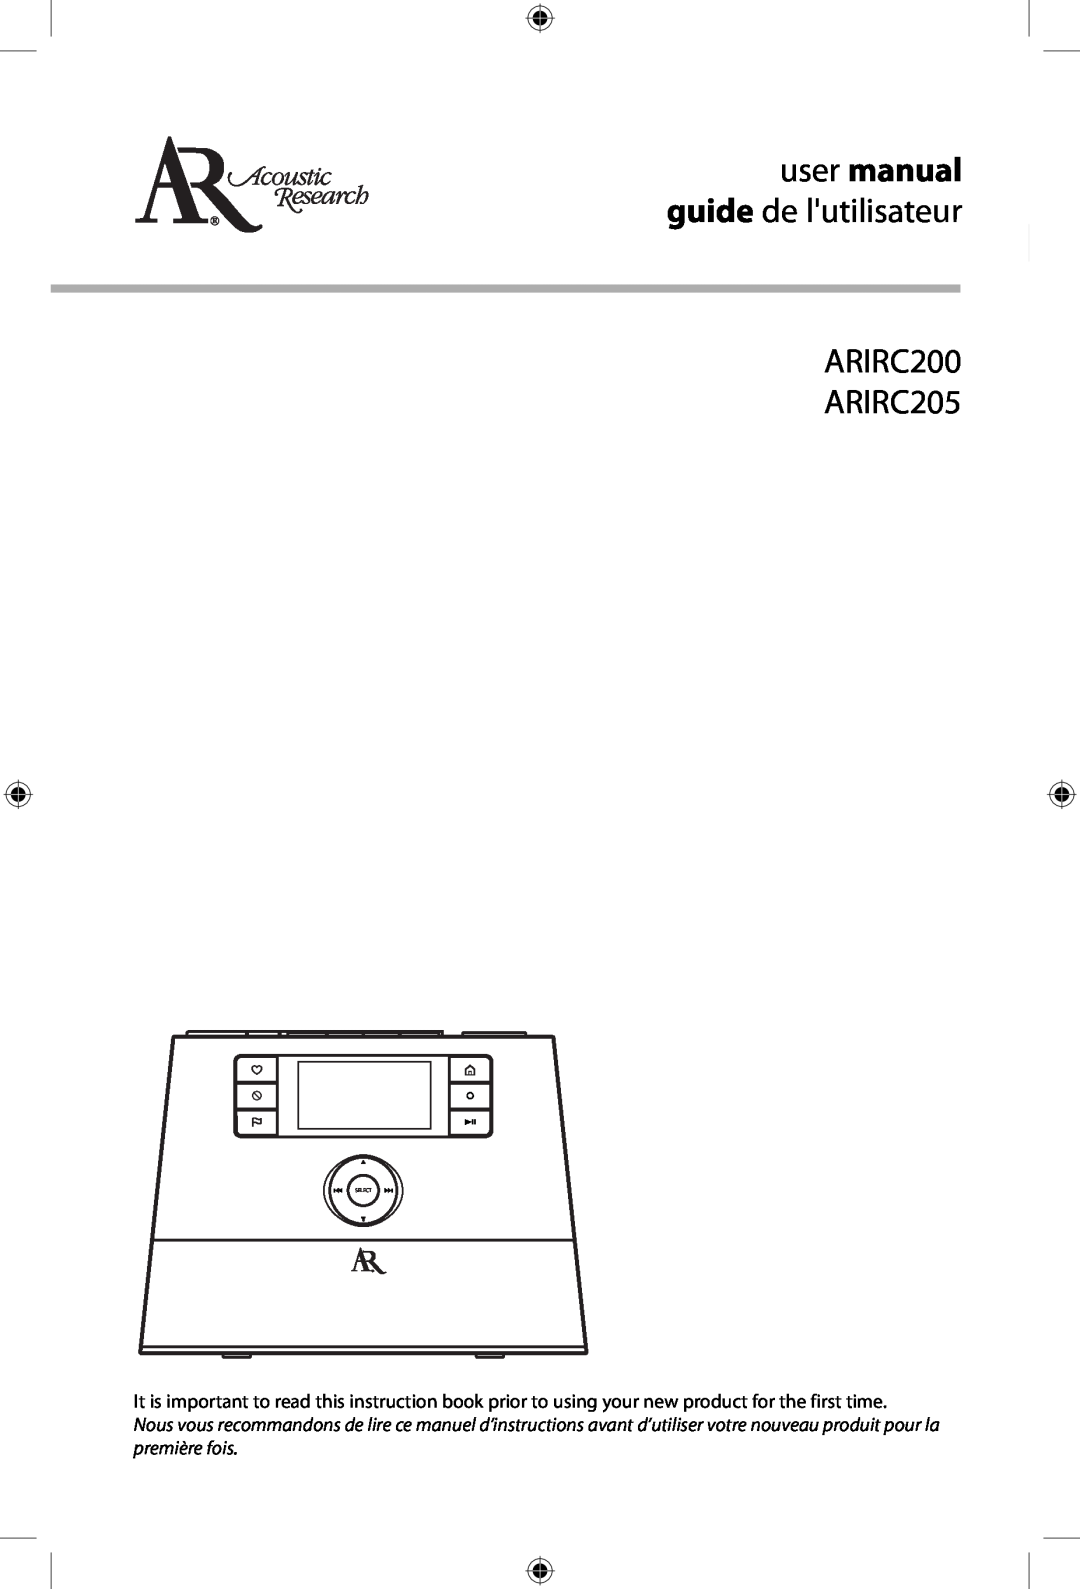 Acoustic Research user manual ARIRC200 ARIRC205 